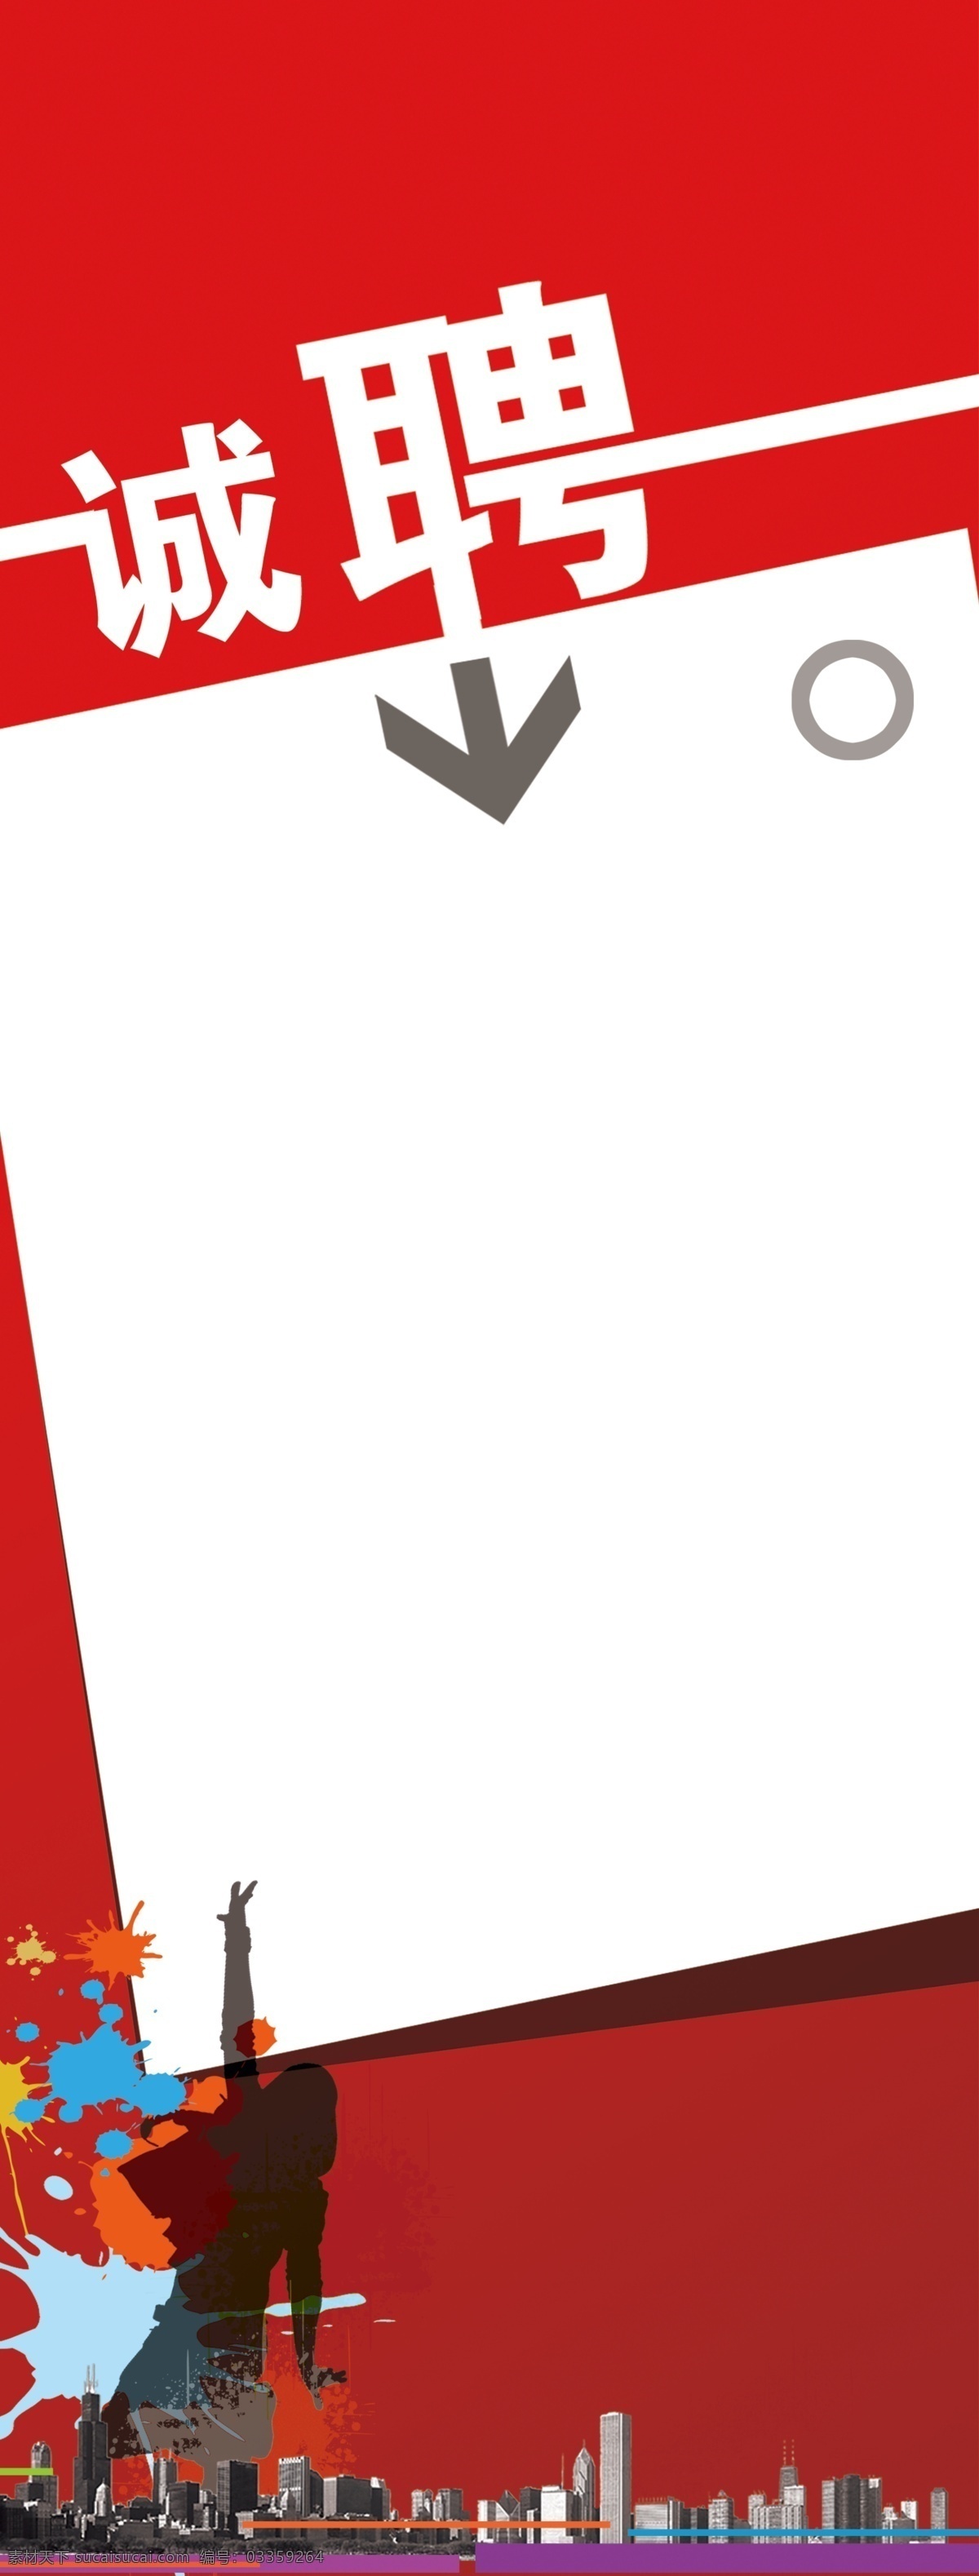 红色 商业 企业 时尚 大气 创意 招聘 海报 背景 排版 排版设计